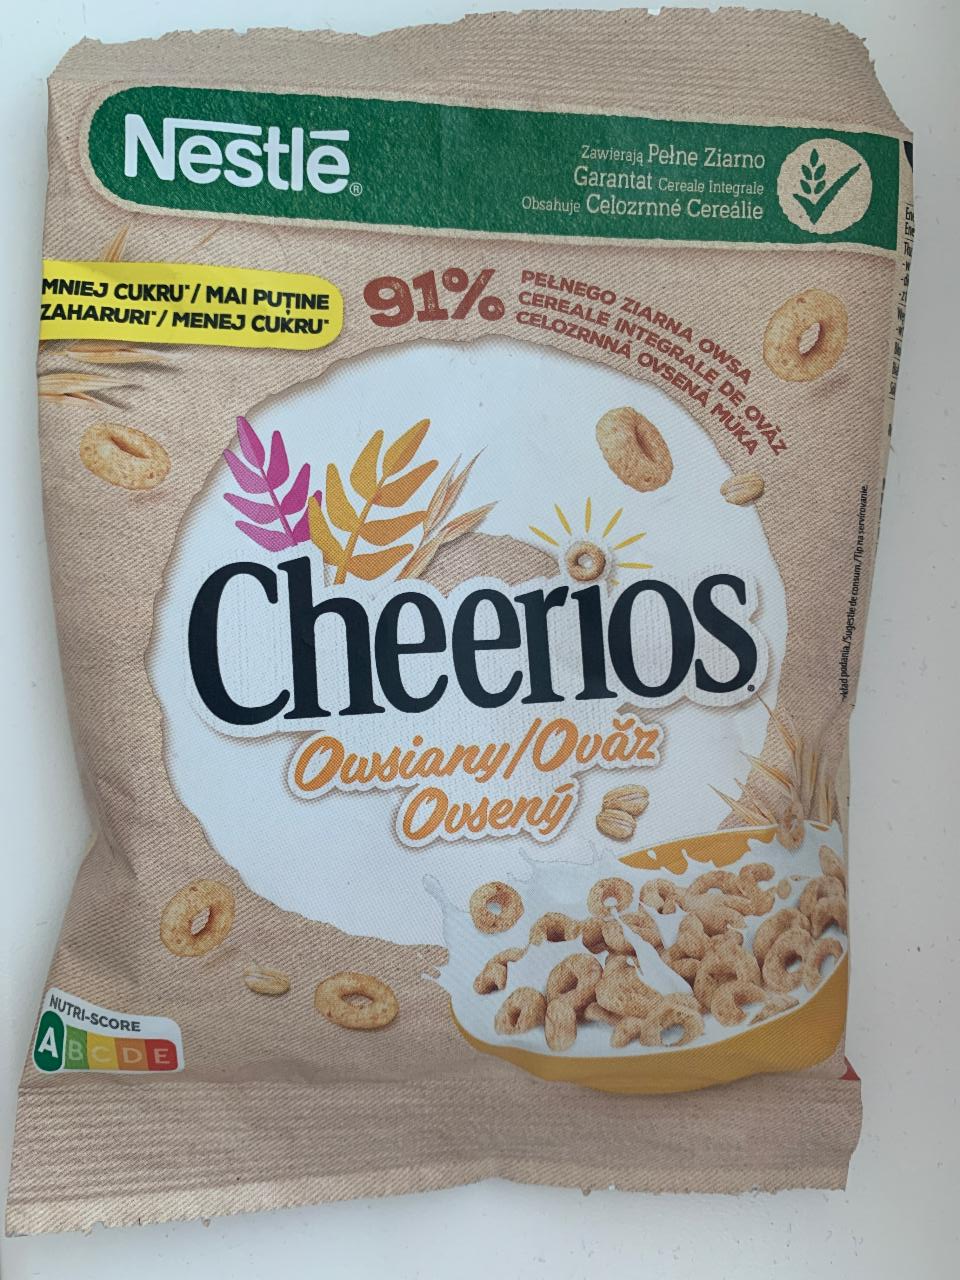 Fotografie - Cheerios oat whole grain Nestlé